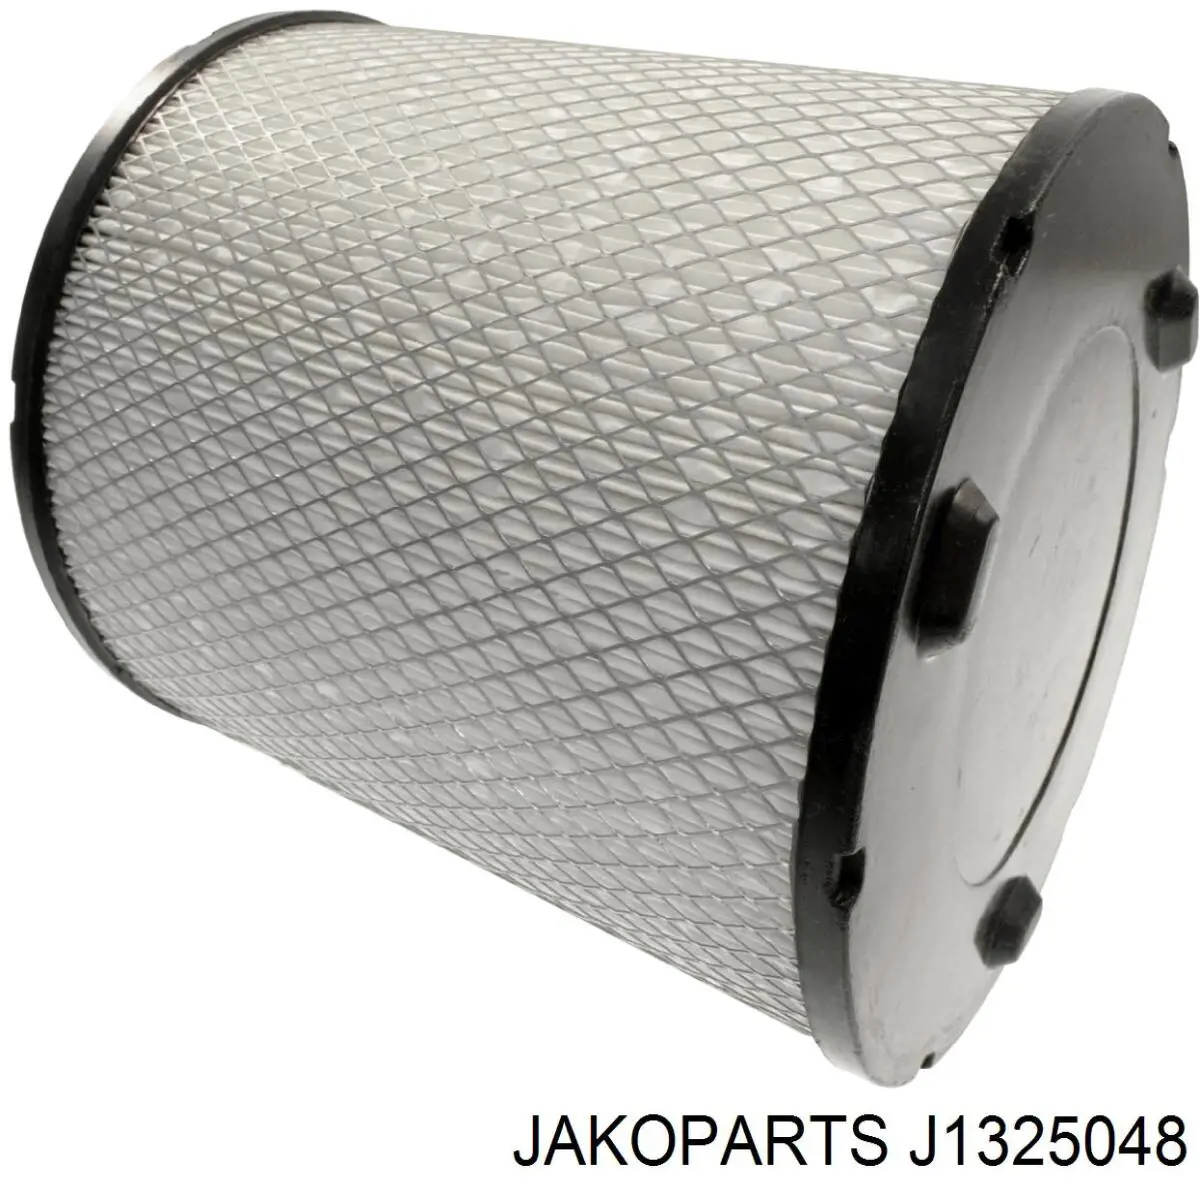 J1325048 Jakoparts filtro de aire